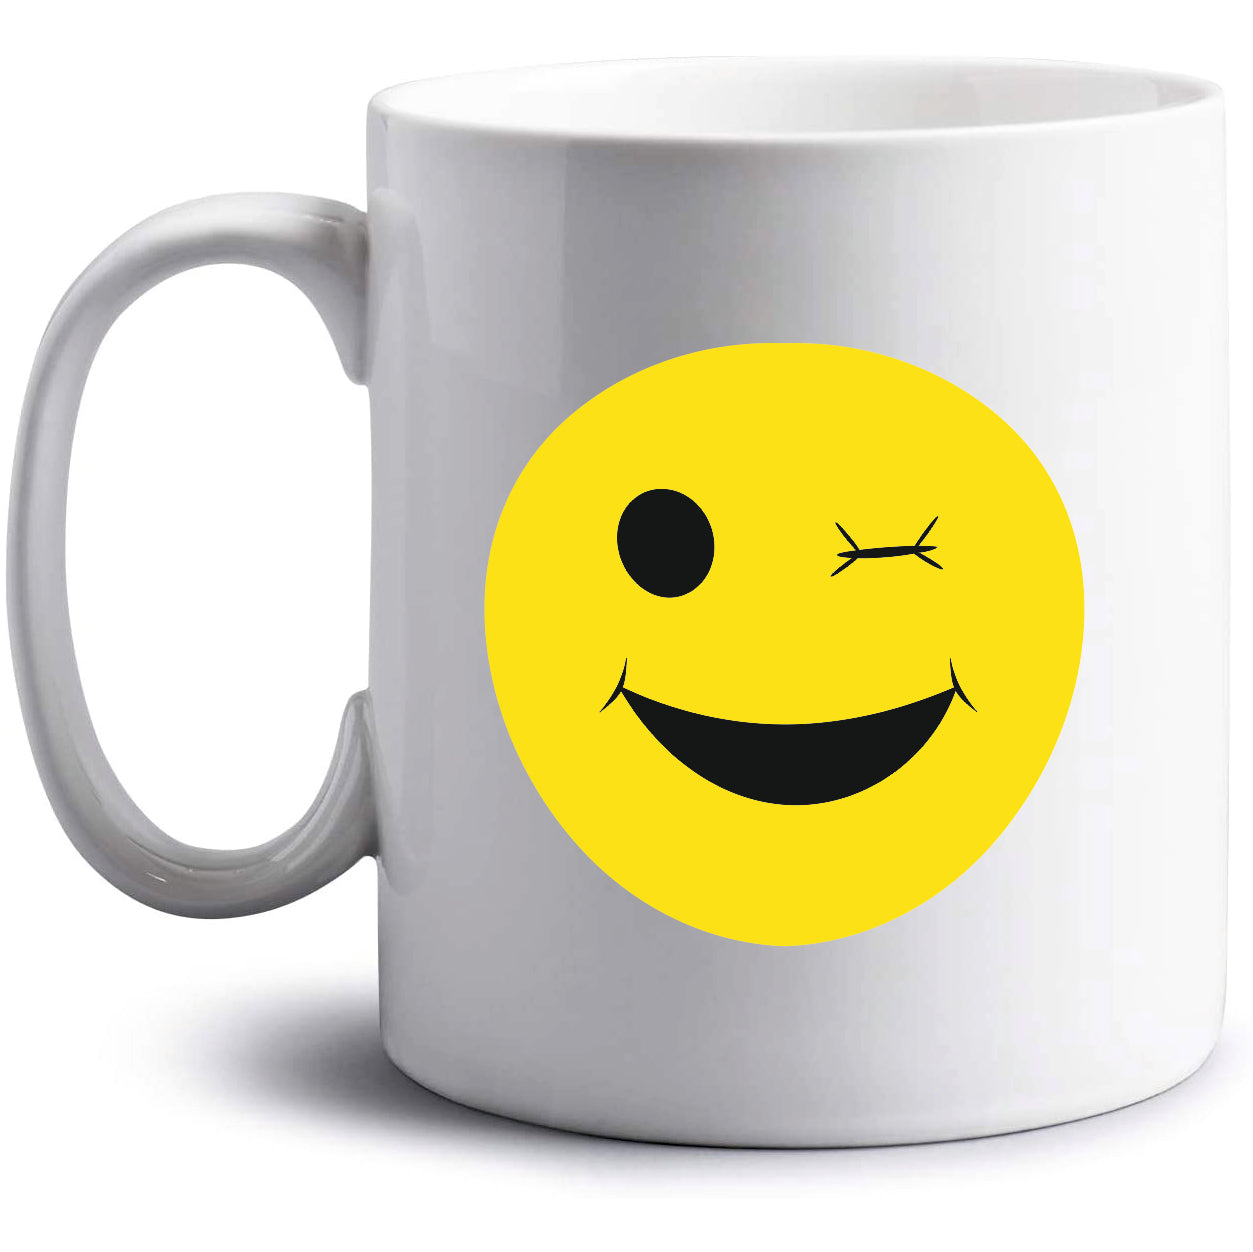 Winking Smiley Mug